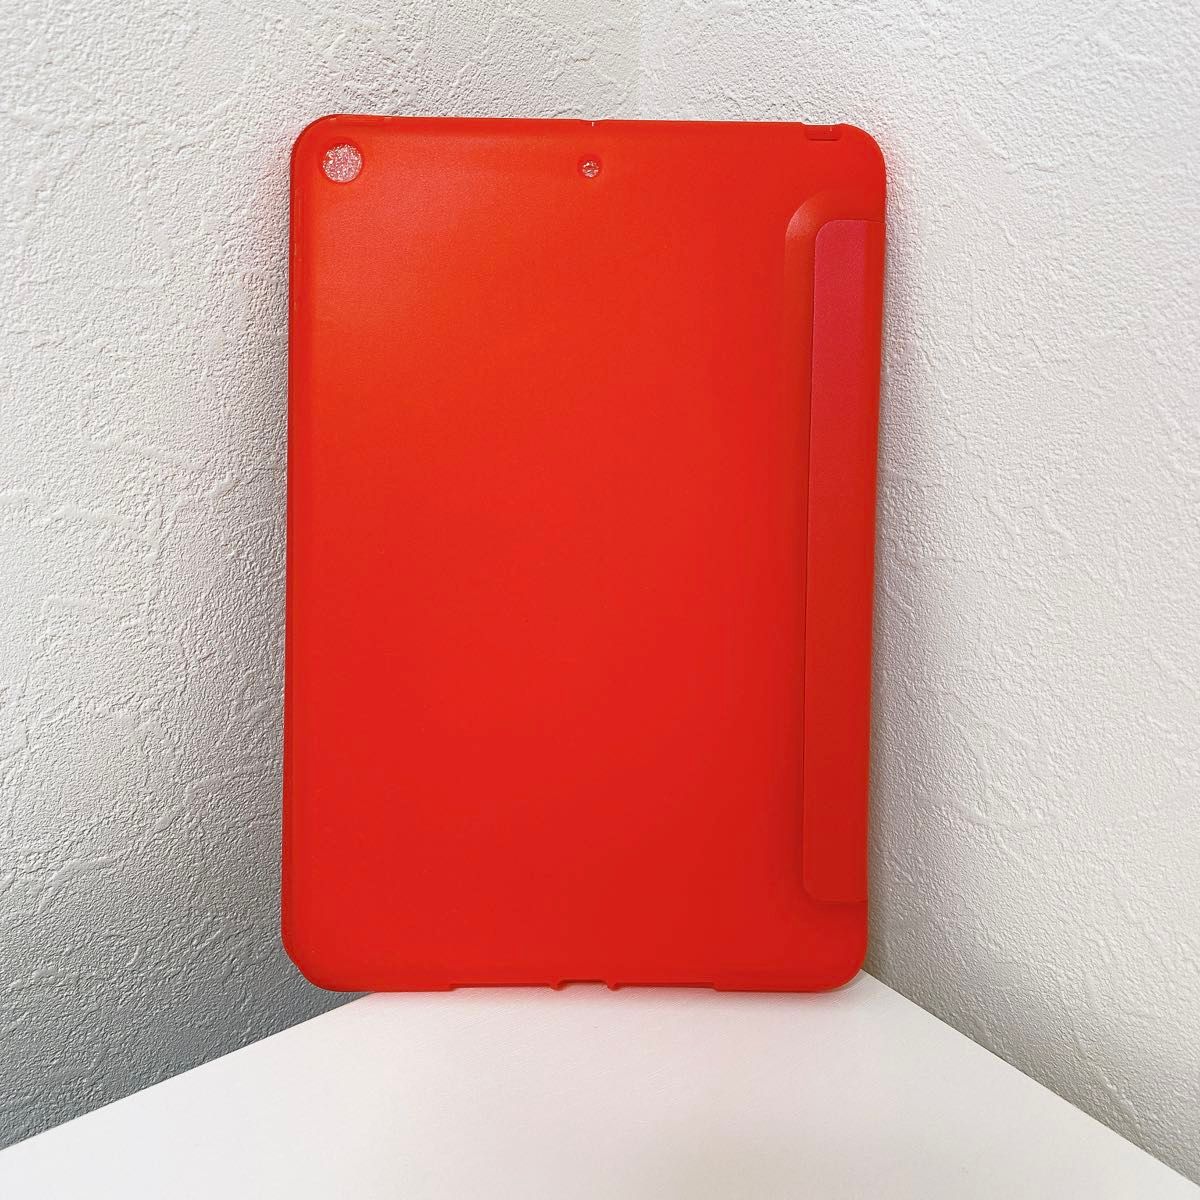 【新品未使用】iPad Mini 5 ケース 超軽量 カバー 三つ折りスタンド 赤 レッド